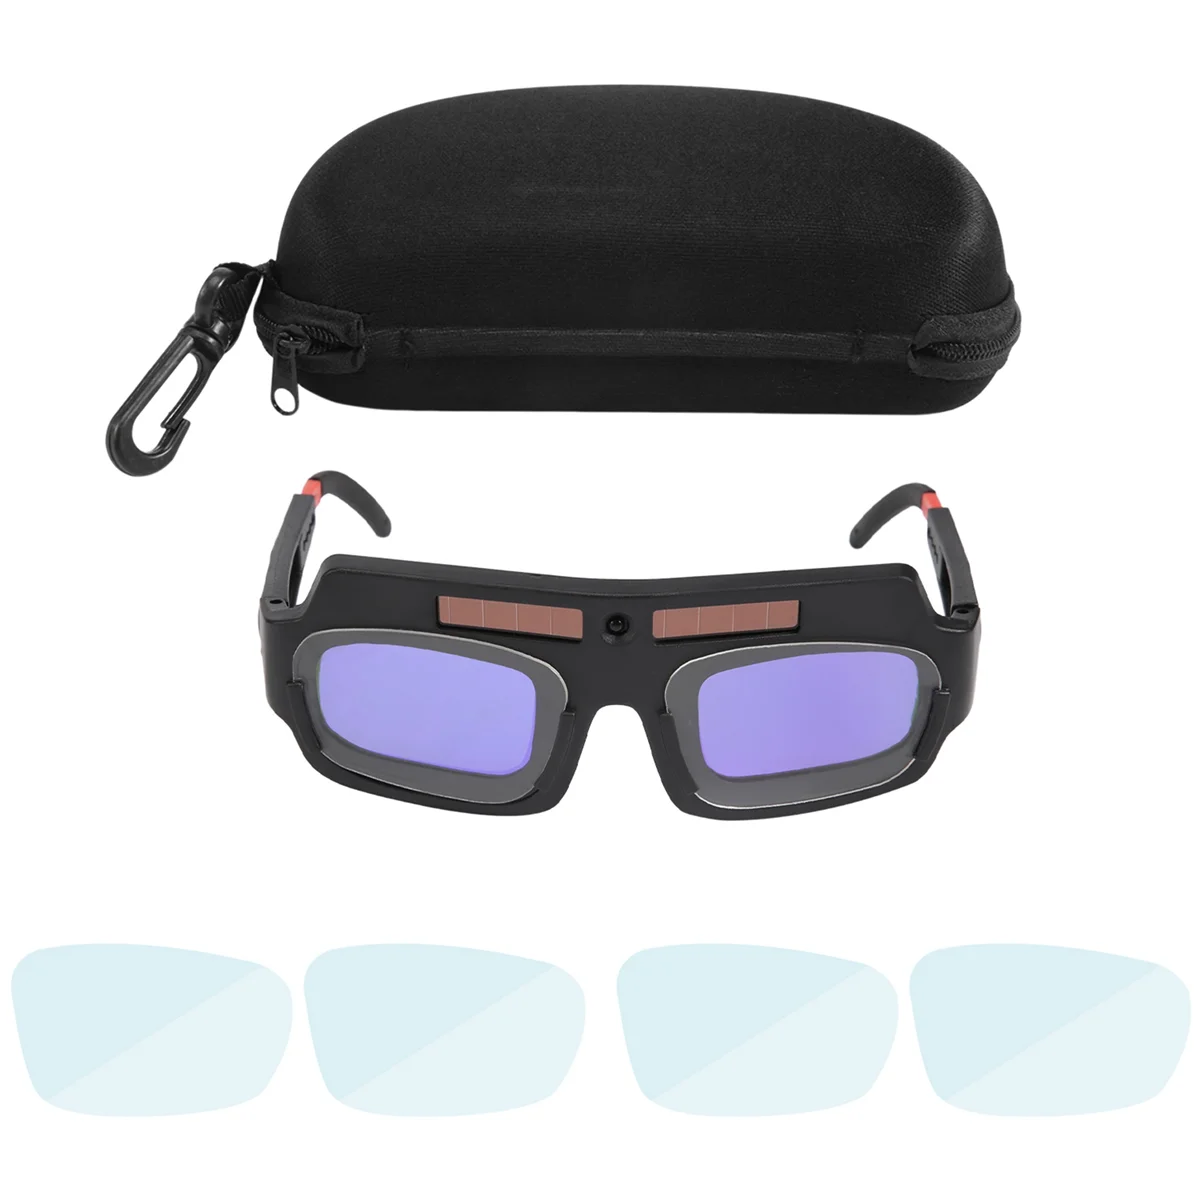 

Solar Powered Auto Darkening Welding Mask Helmet Goggles Welder Glasses Arc Anti-Shock Lens with Storage Case